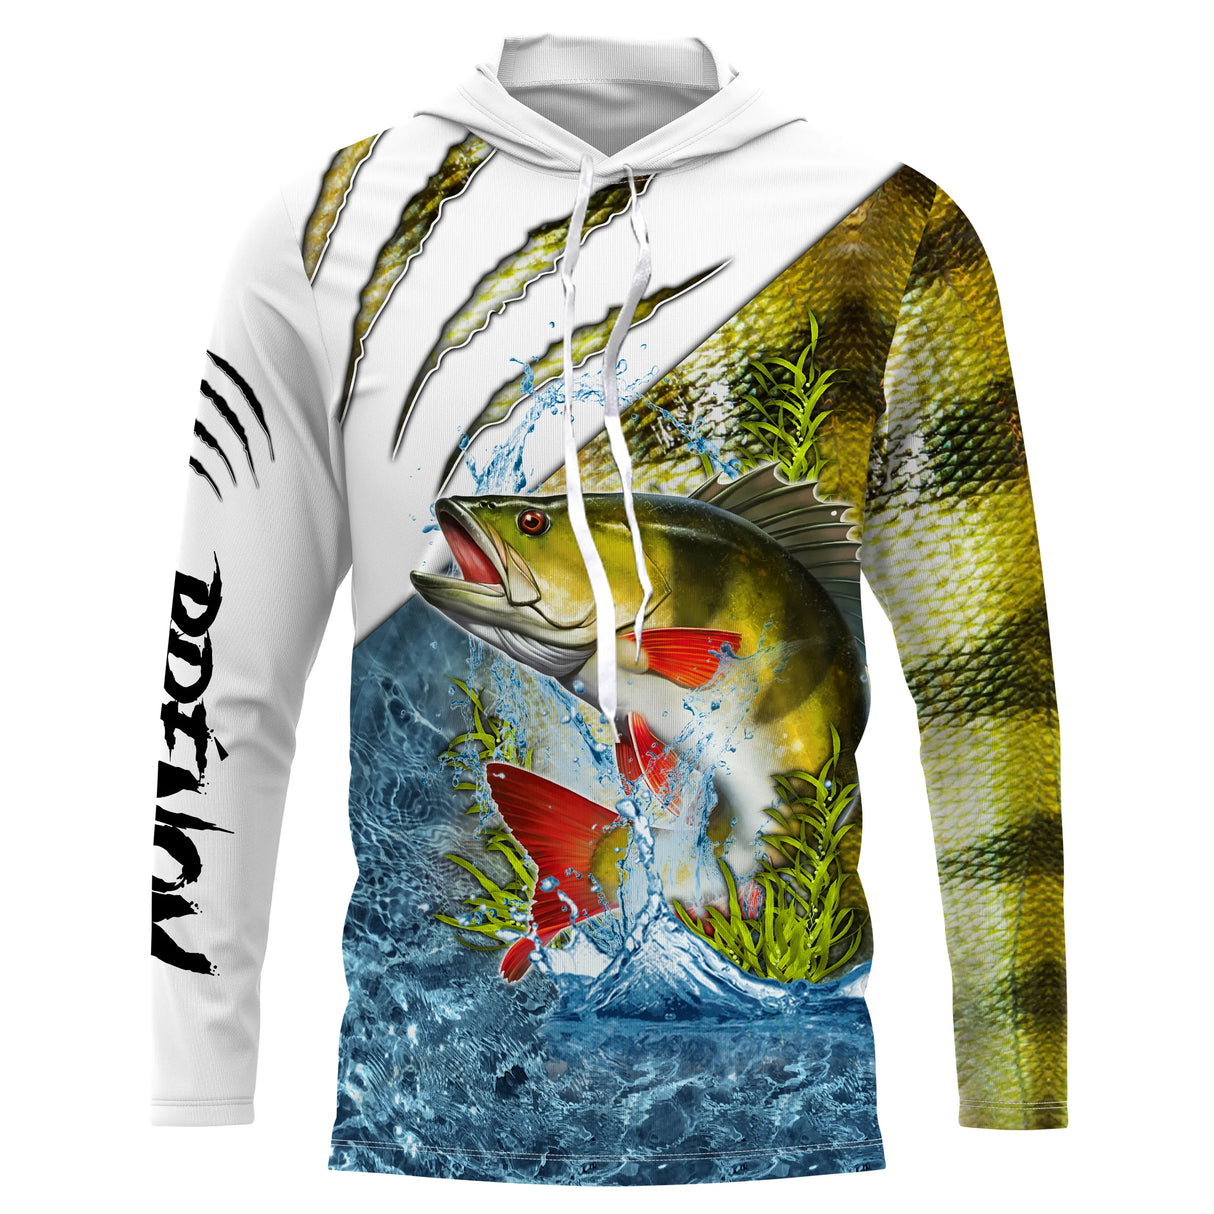 Camiseta, sudadera con capucha, camiseta de pesca de perca con protección UV, regalo de pescador personalizado - CT21112224